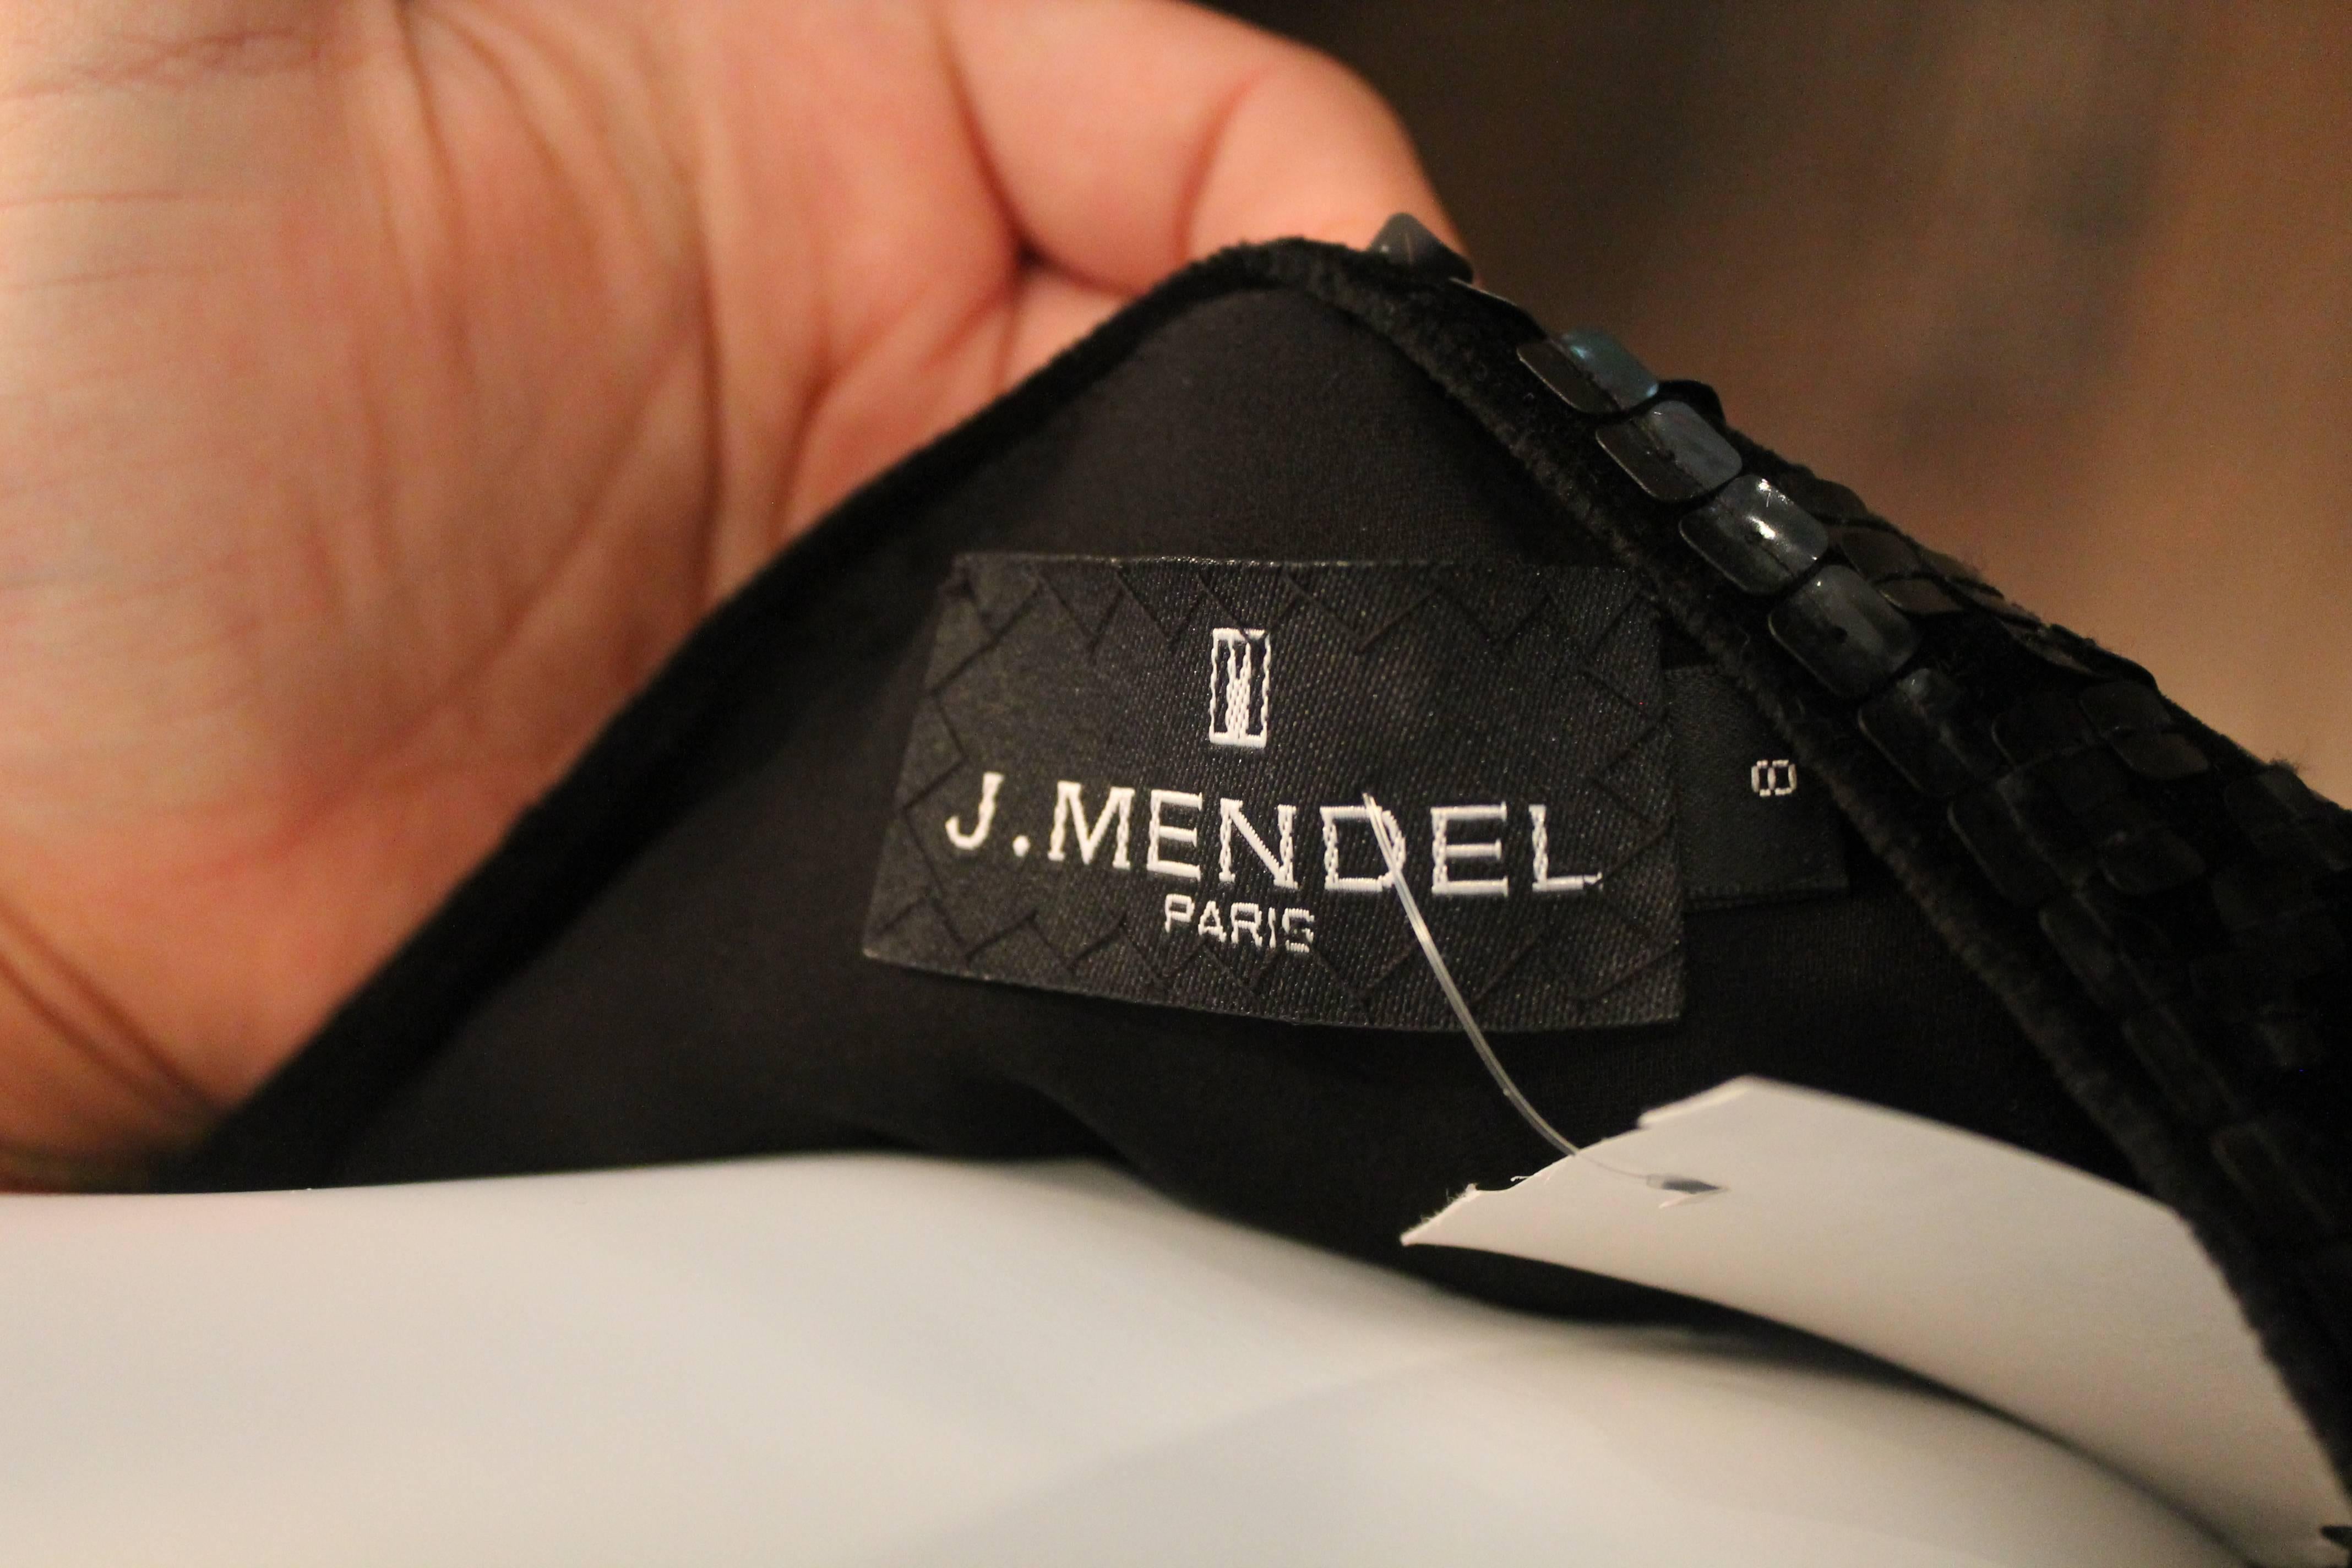 J. Mendel Black Silk Skirt with Sequin Panels - 8 1